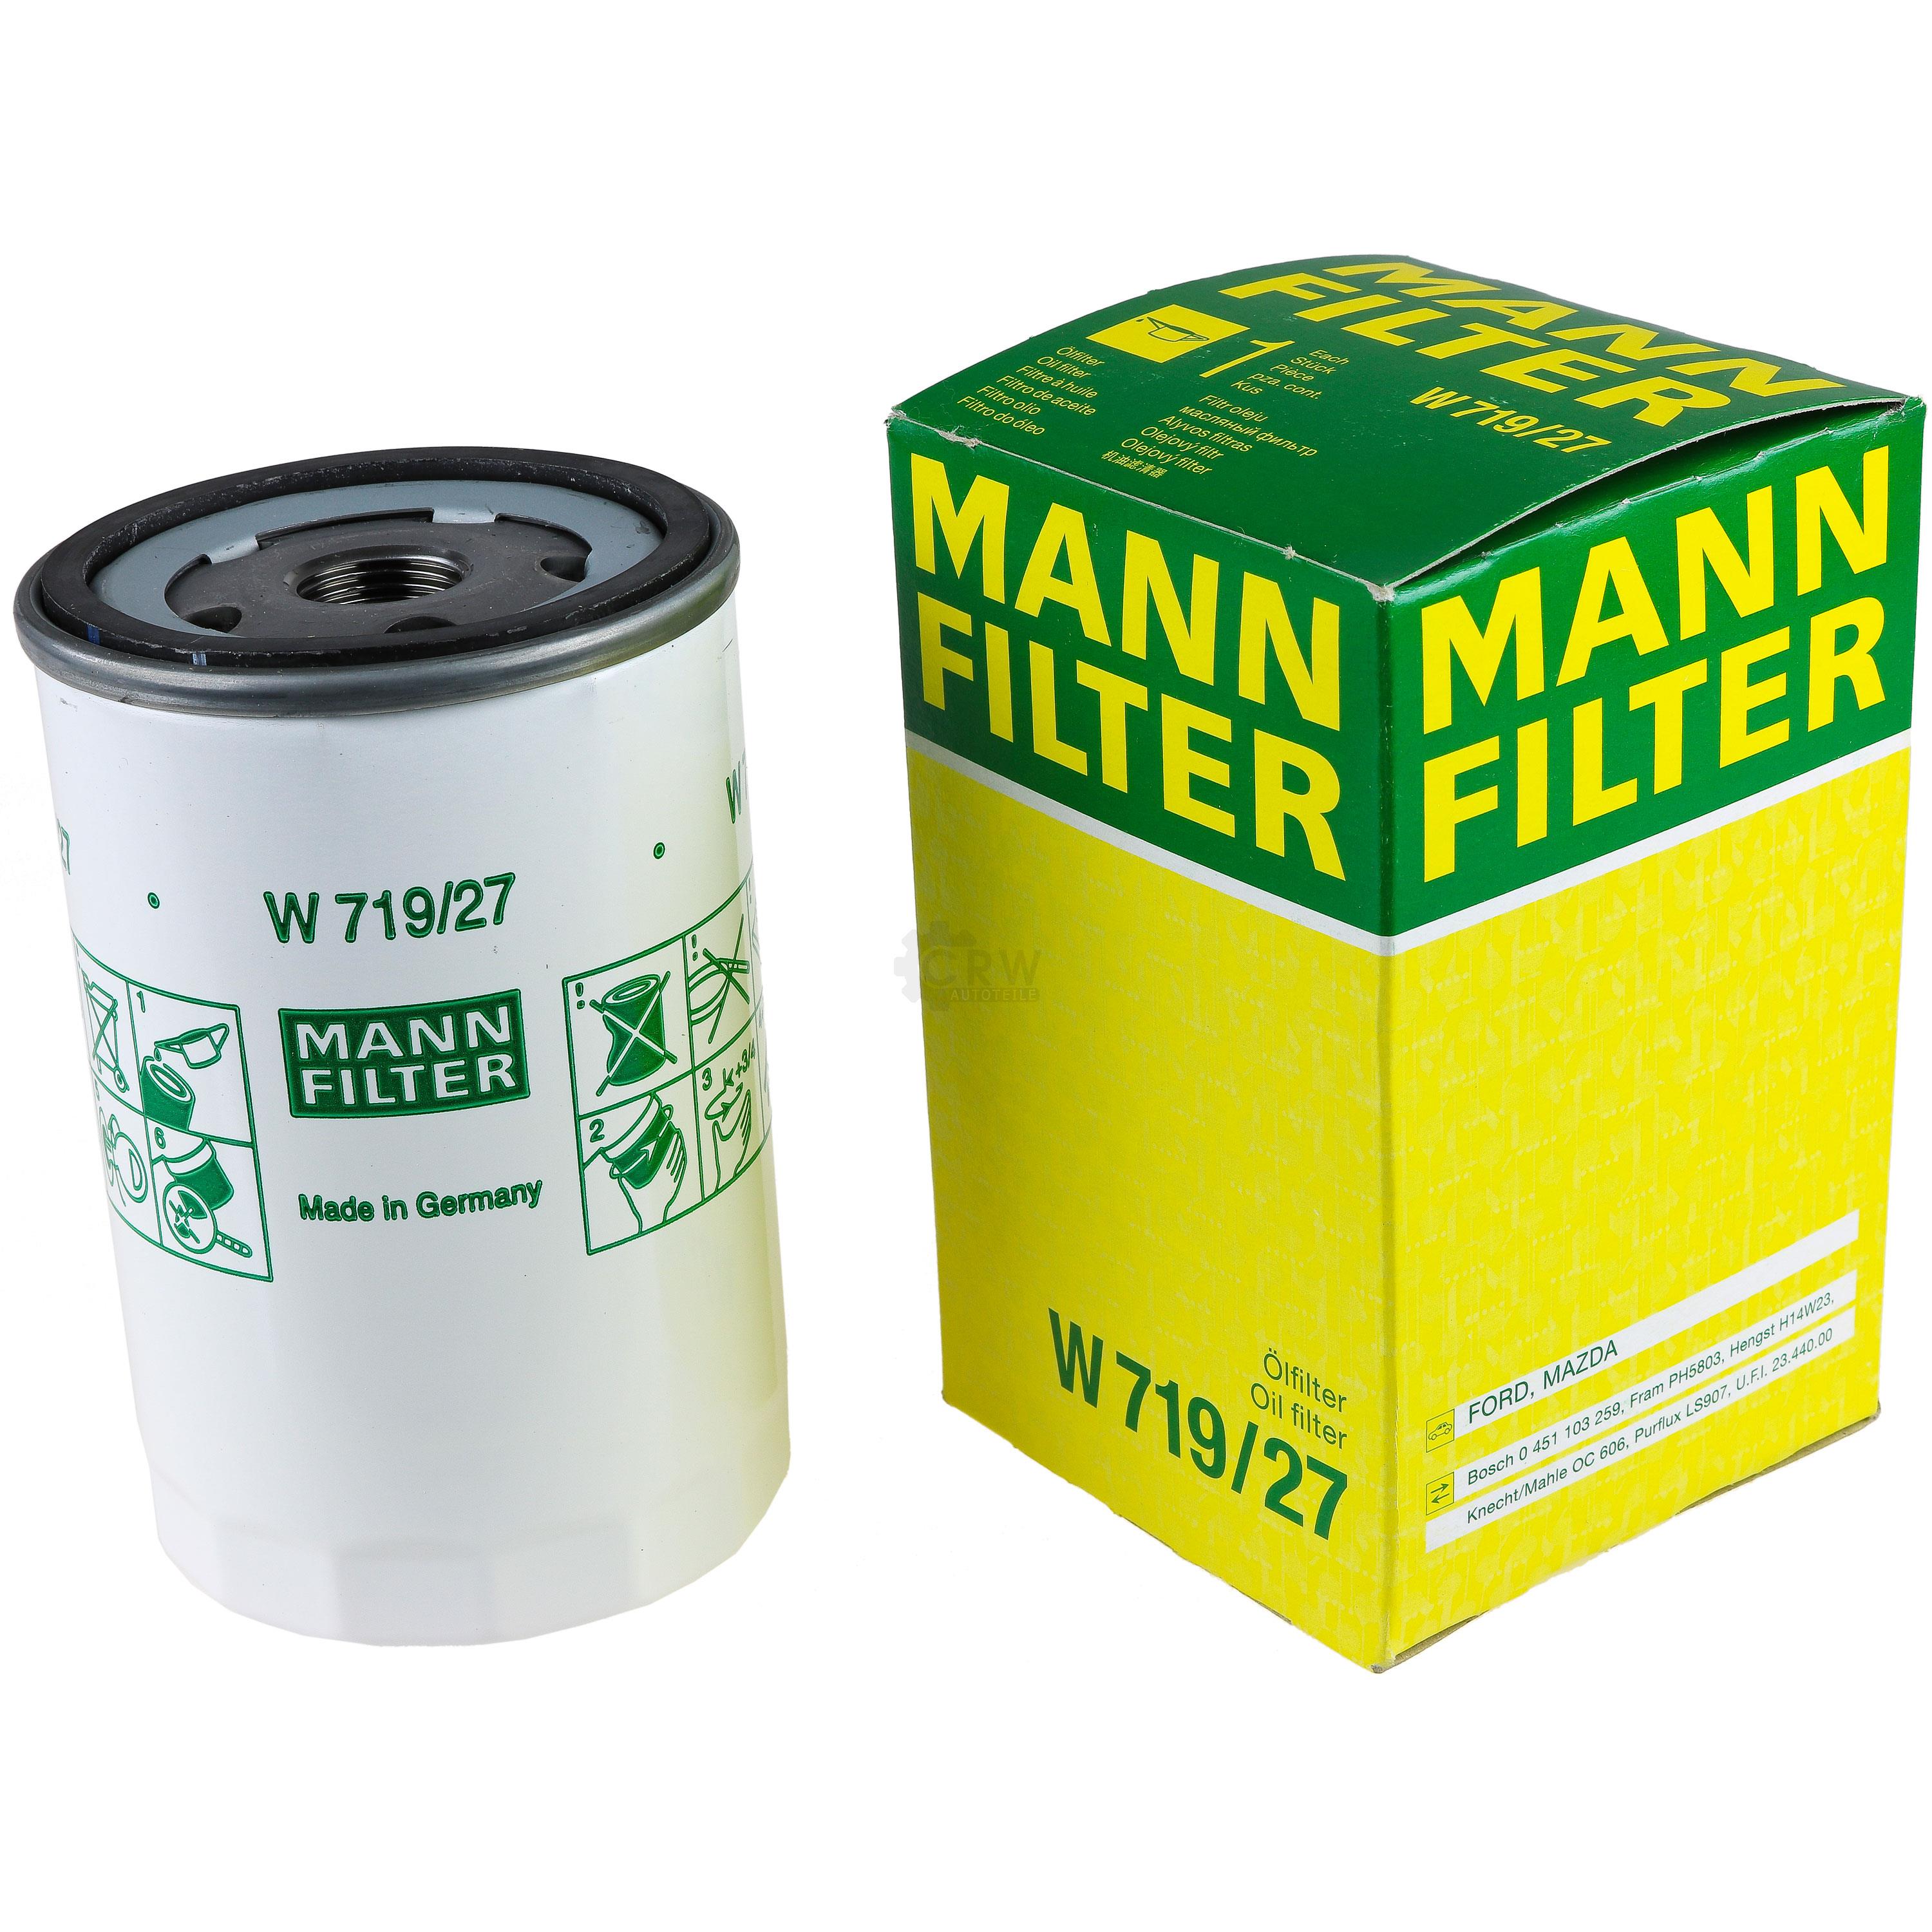 MANN-FILTER Ölfilter W 719/27 Oil Filter